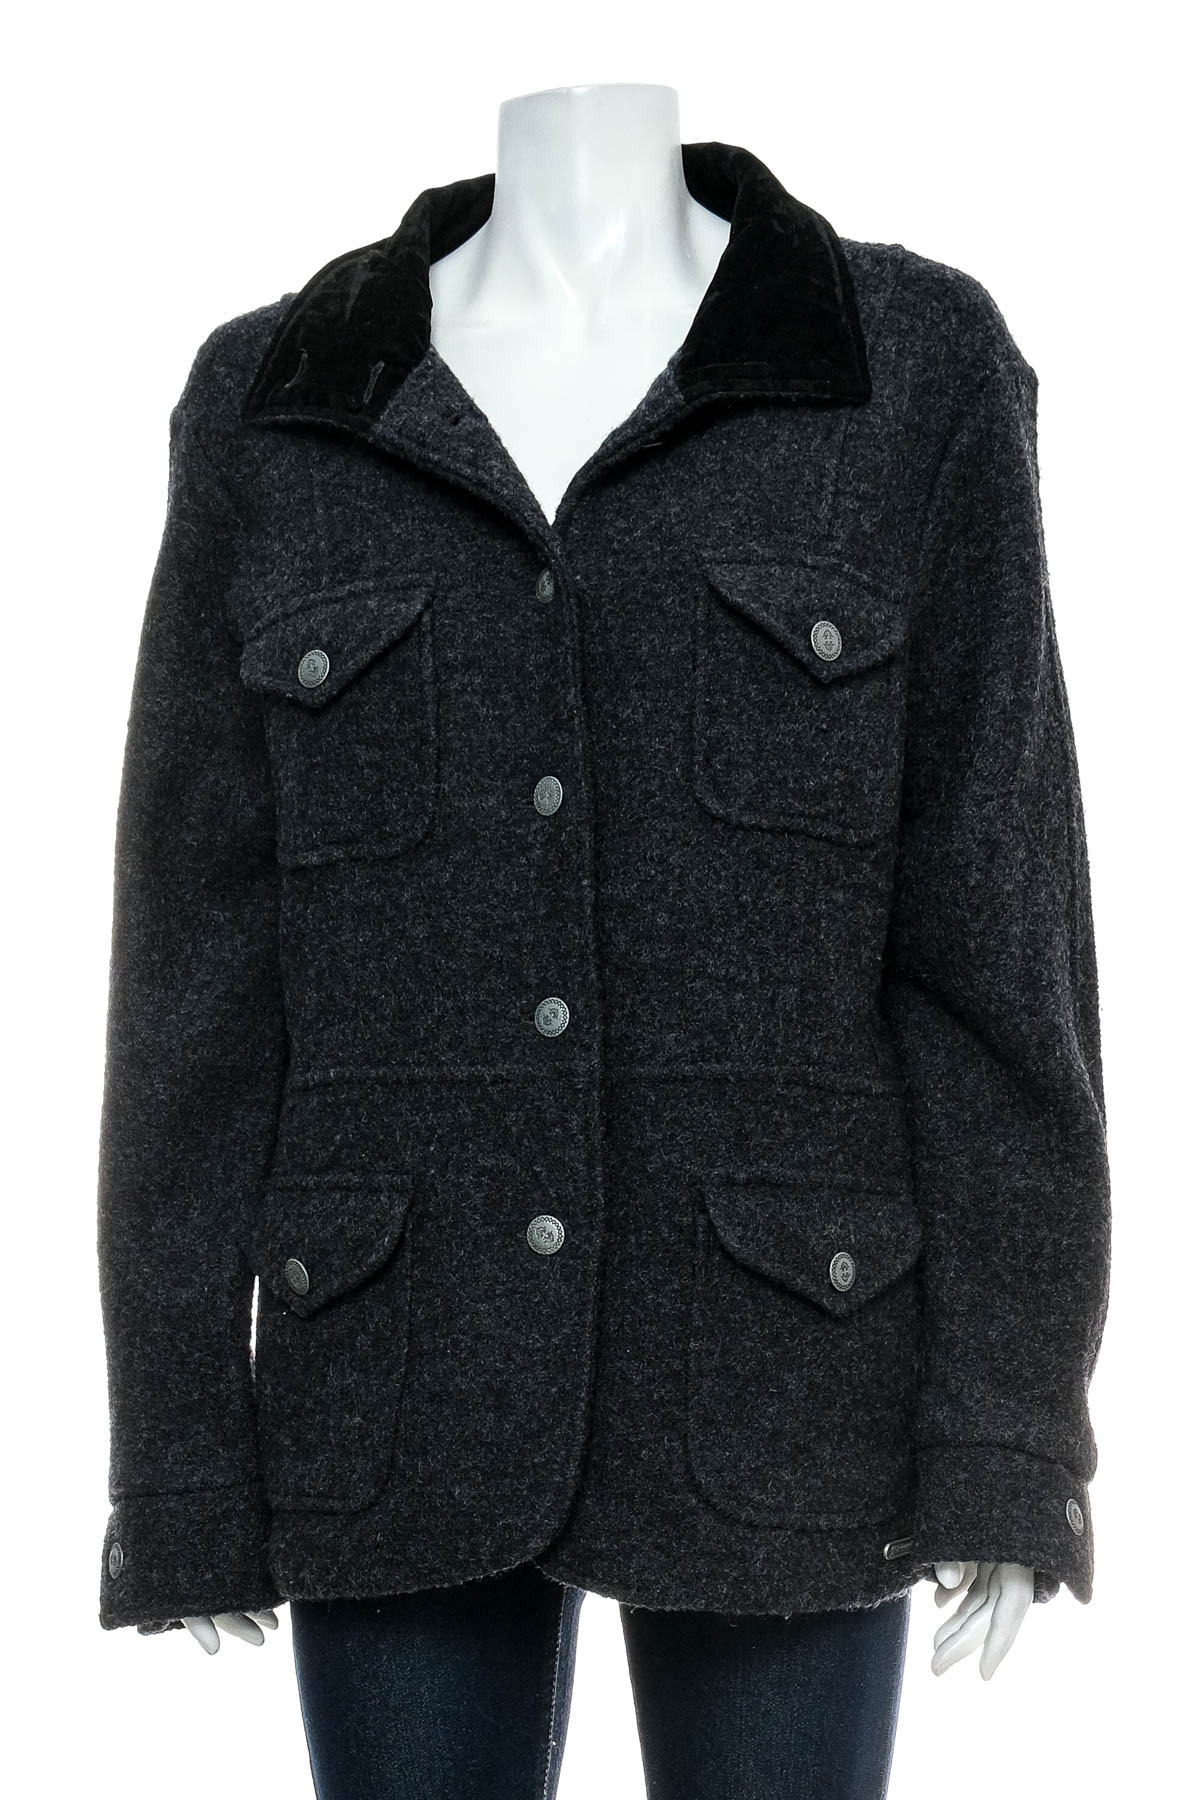 Women's coat - Hammerschmid - 0